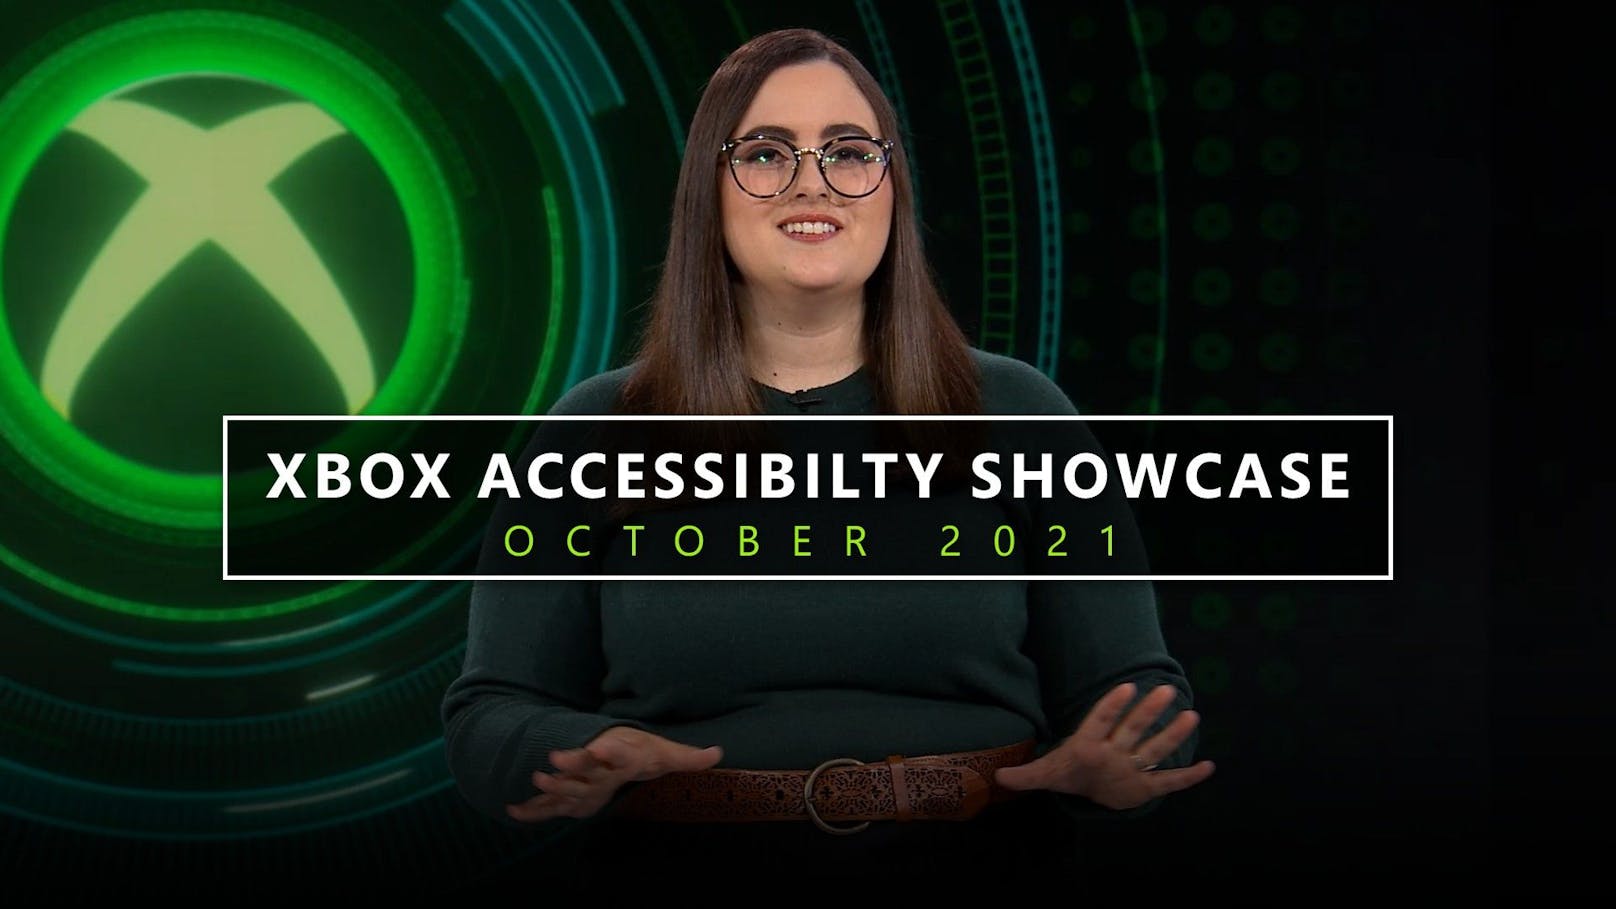 Xbox stellt neue Accessibility Updates vor